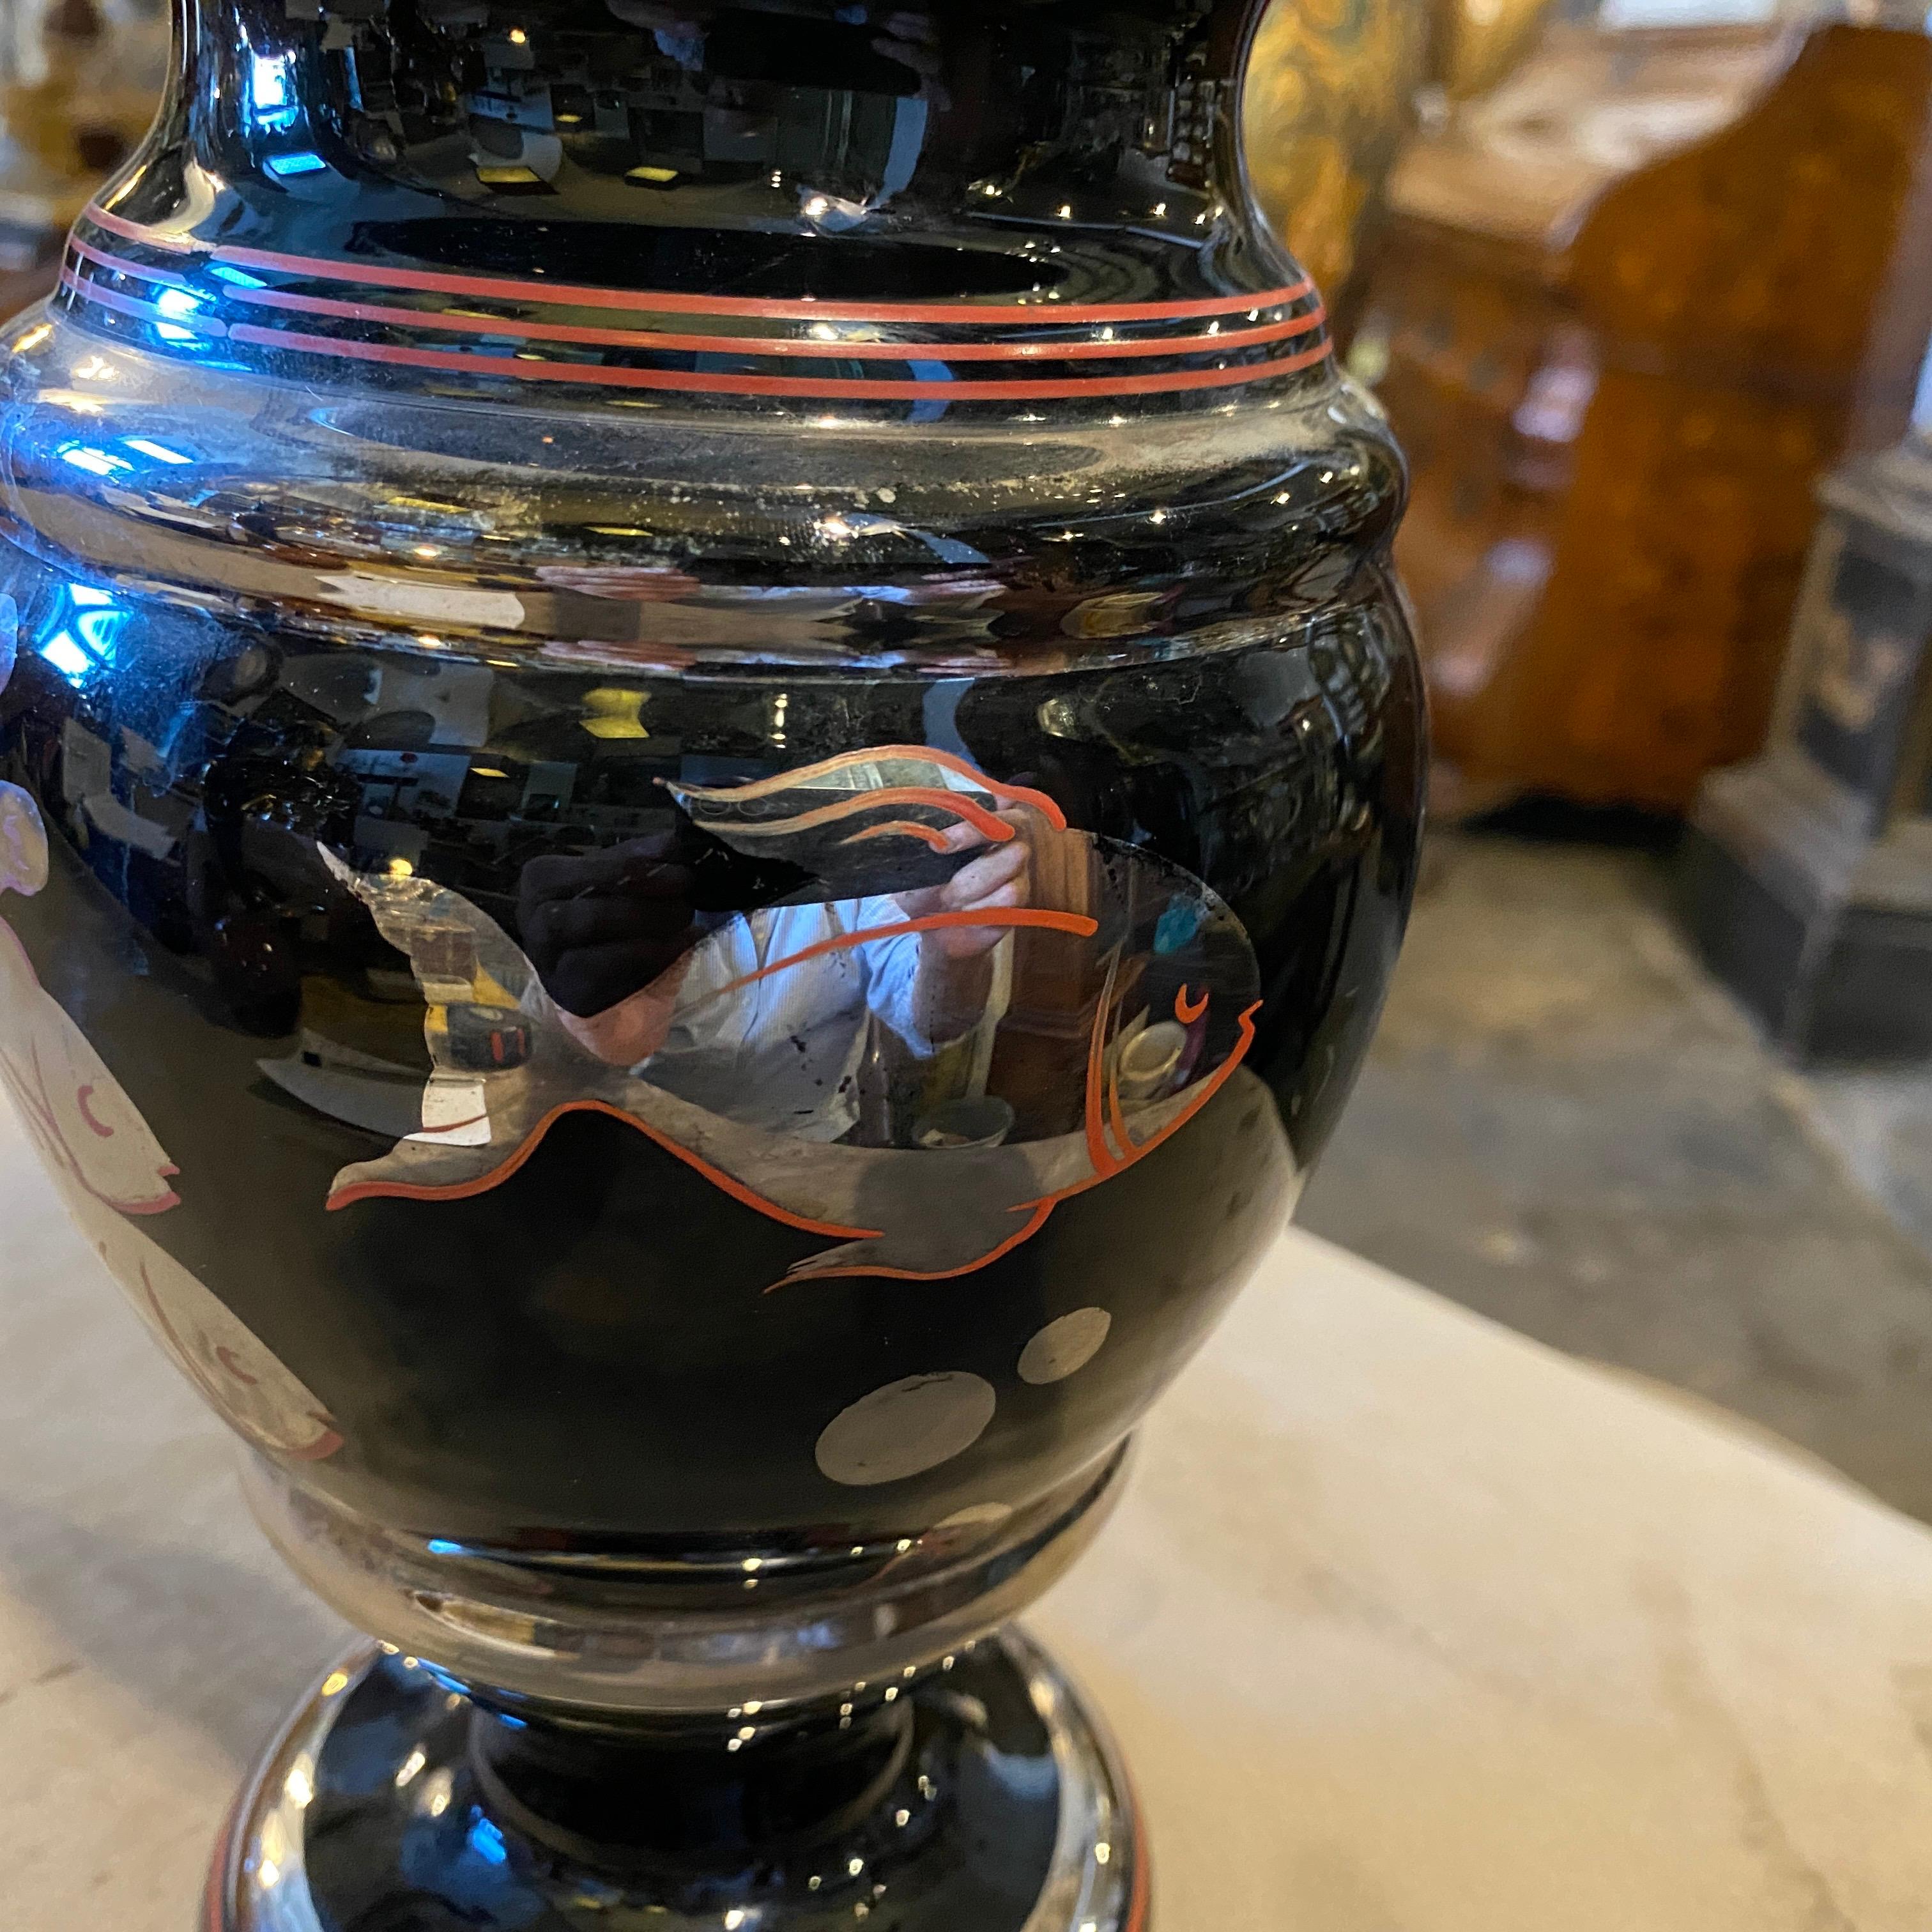 Un rare vase en verre noir décoré en rouge et argent avec la flore et la faune marine, il est en parfait état.